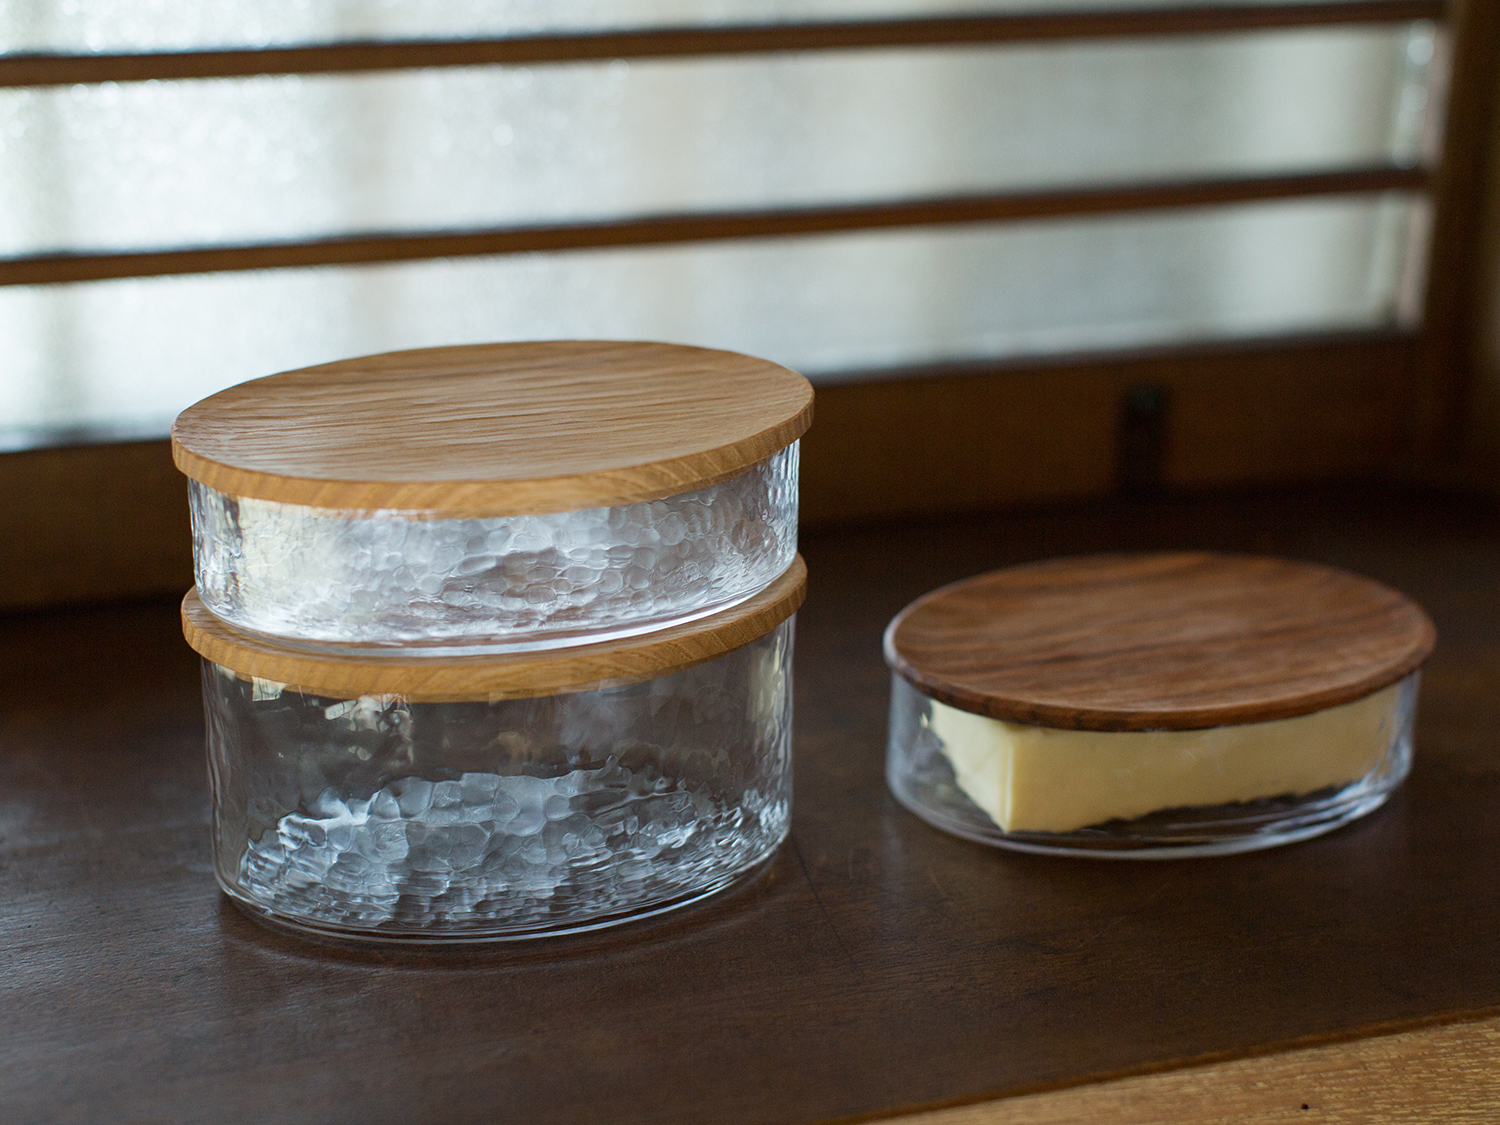 加藤良行さんのオーバルボックスです。バターや少量のおかずを保管するのに便利です。